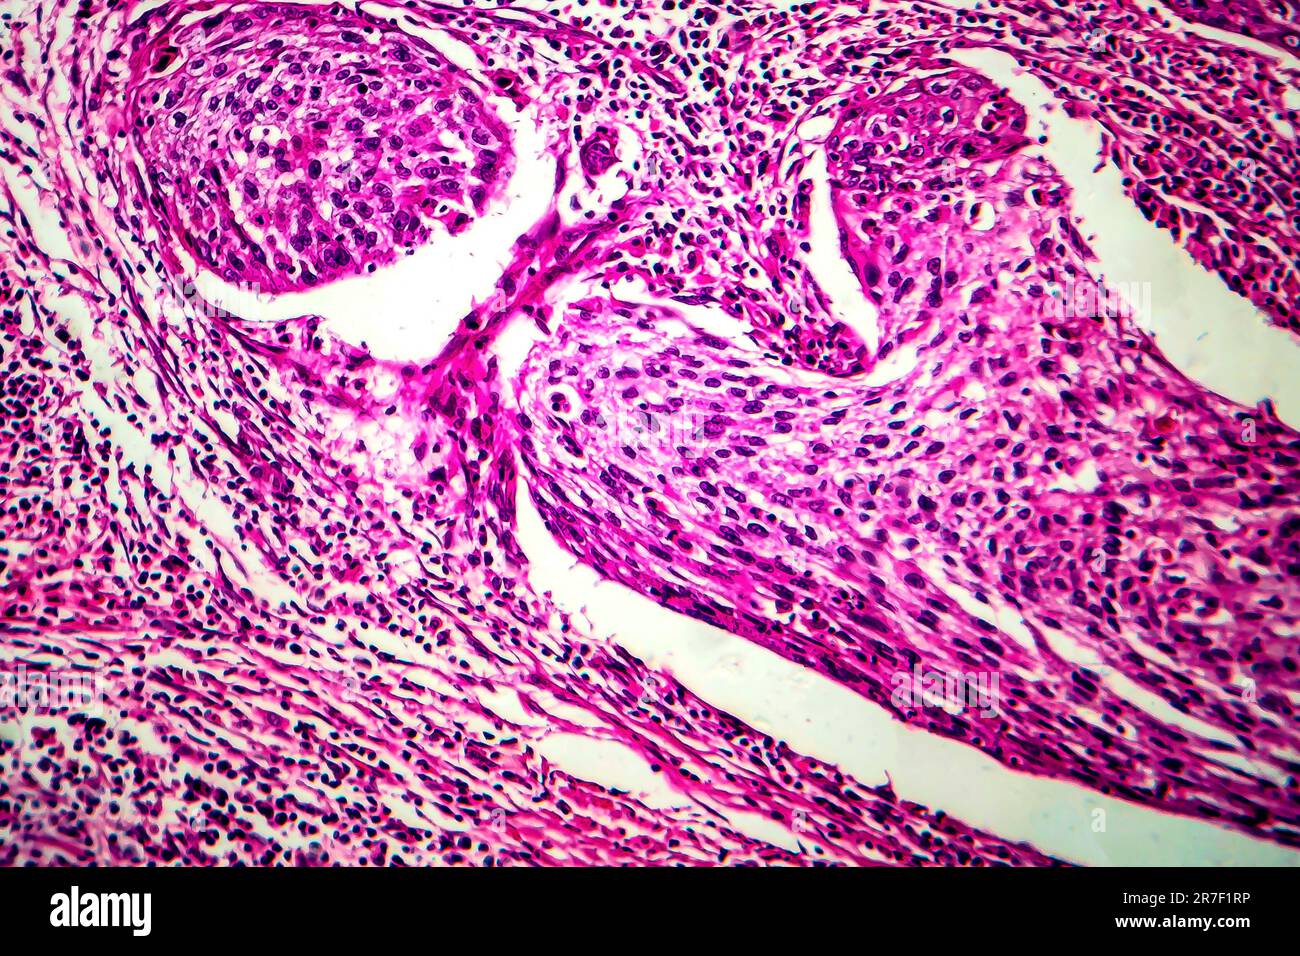 Gebärmutterhalskrebs. Licht Schliffbild (LM), einen Abschnitt über ein Plattenepithelkarzinom der Zervix. Gebärmutterhalskrebs ist eine Krebserkrankung des Gebärmutterhalses, wh Stockfoto